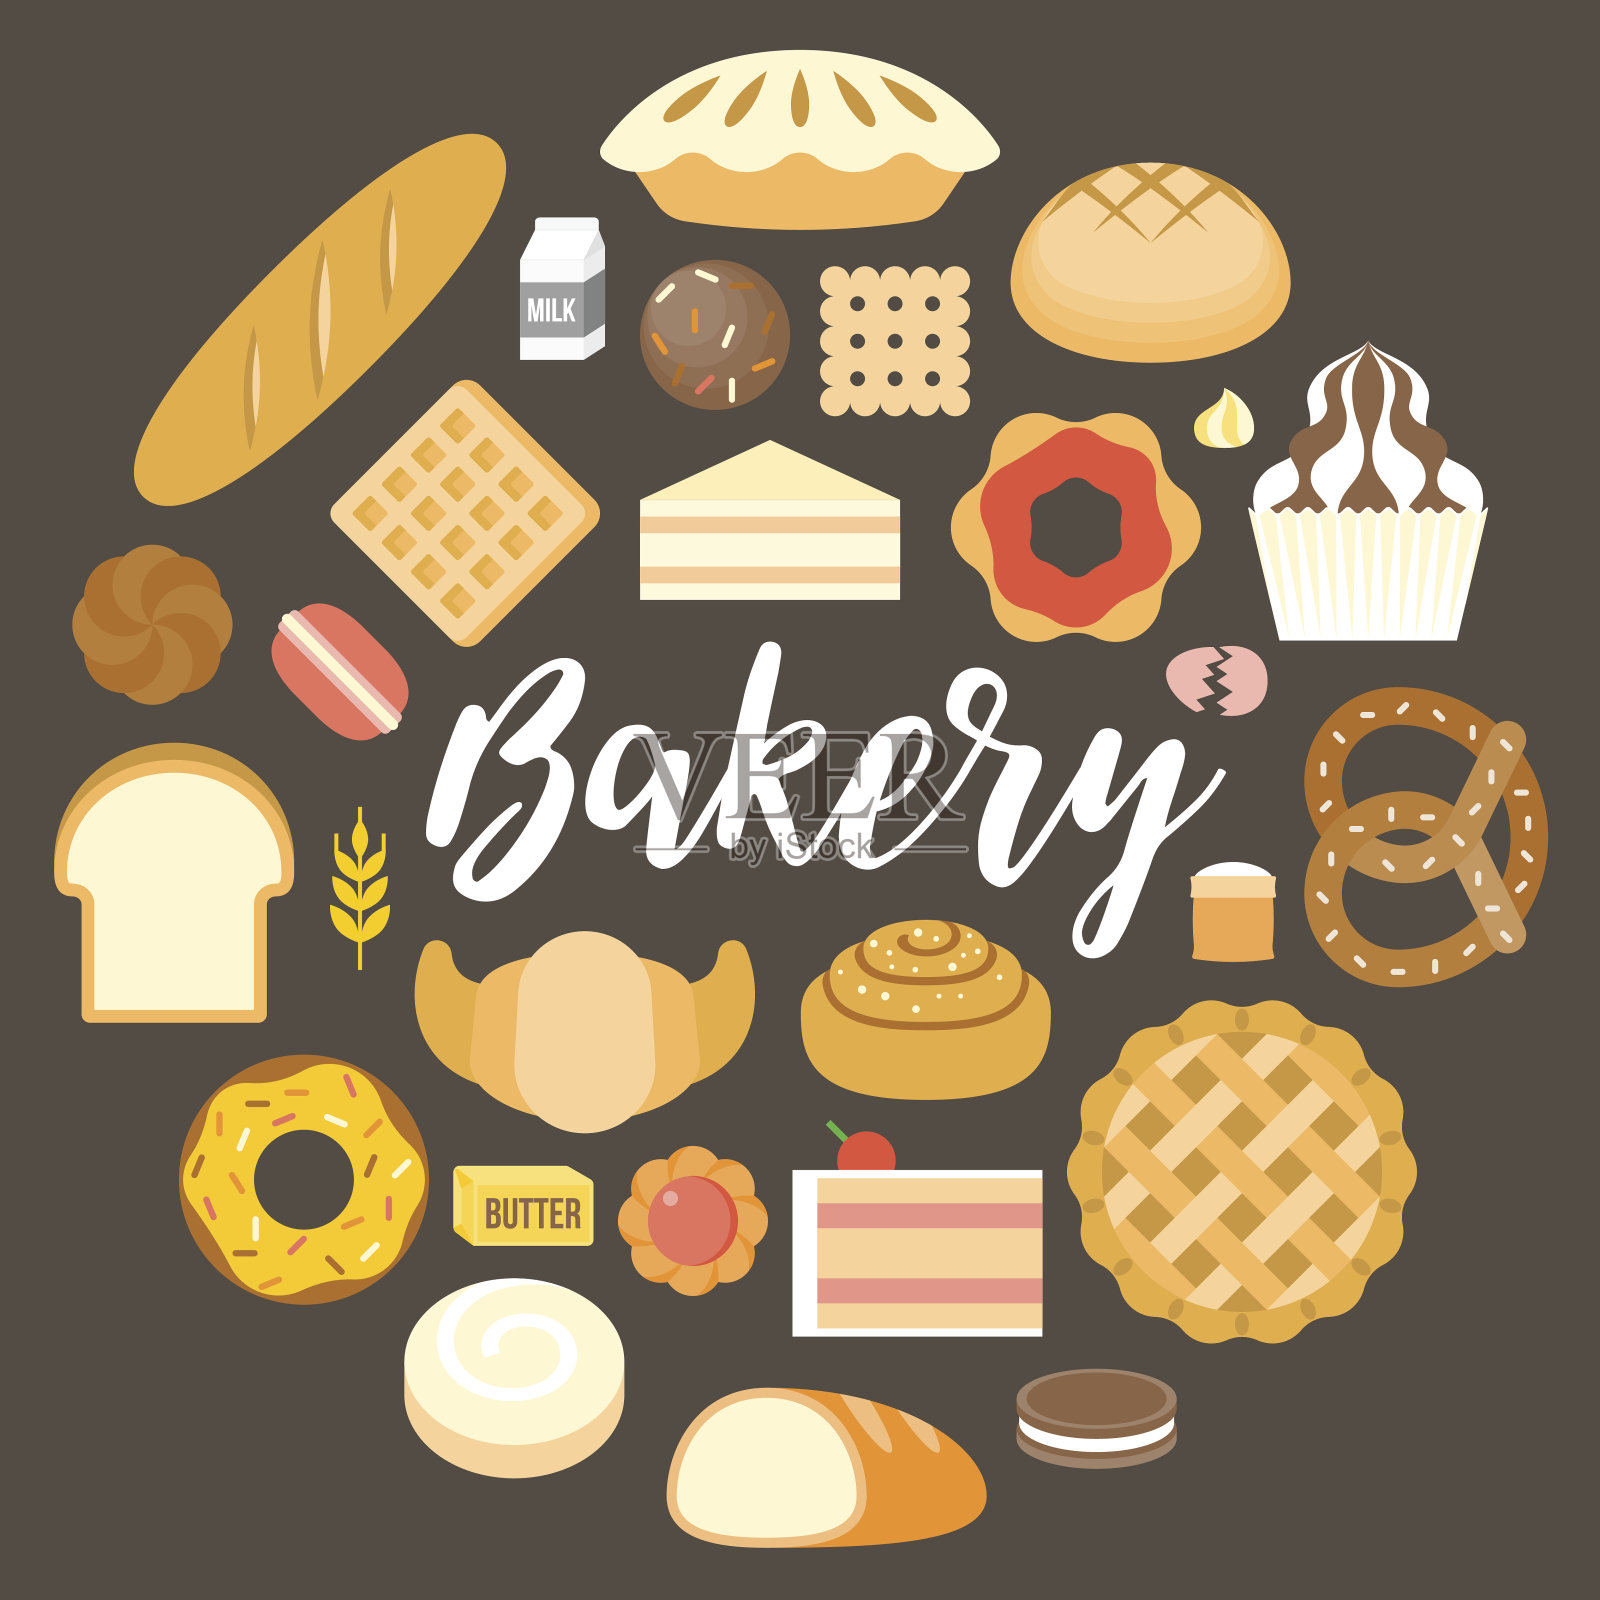 面包标题和面包产品呈圆形排列插画图片素材